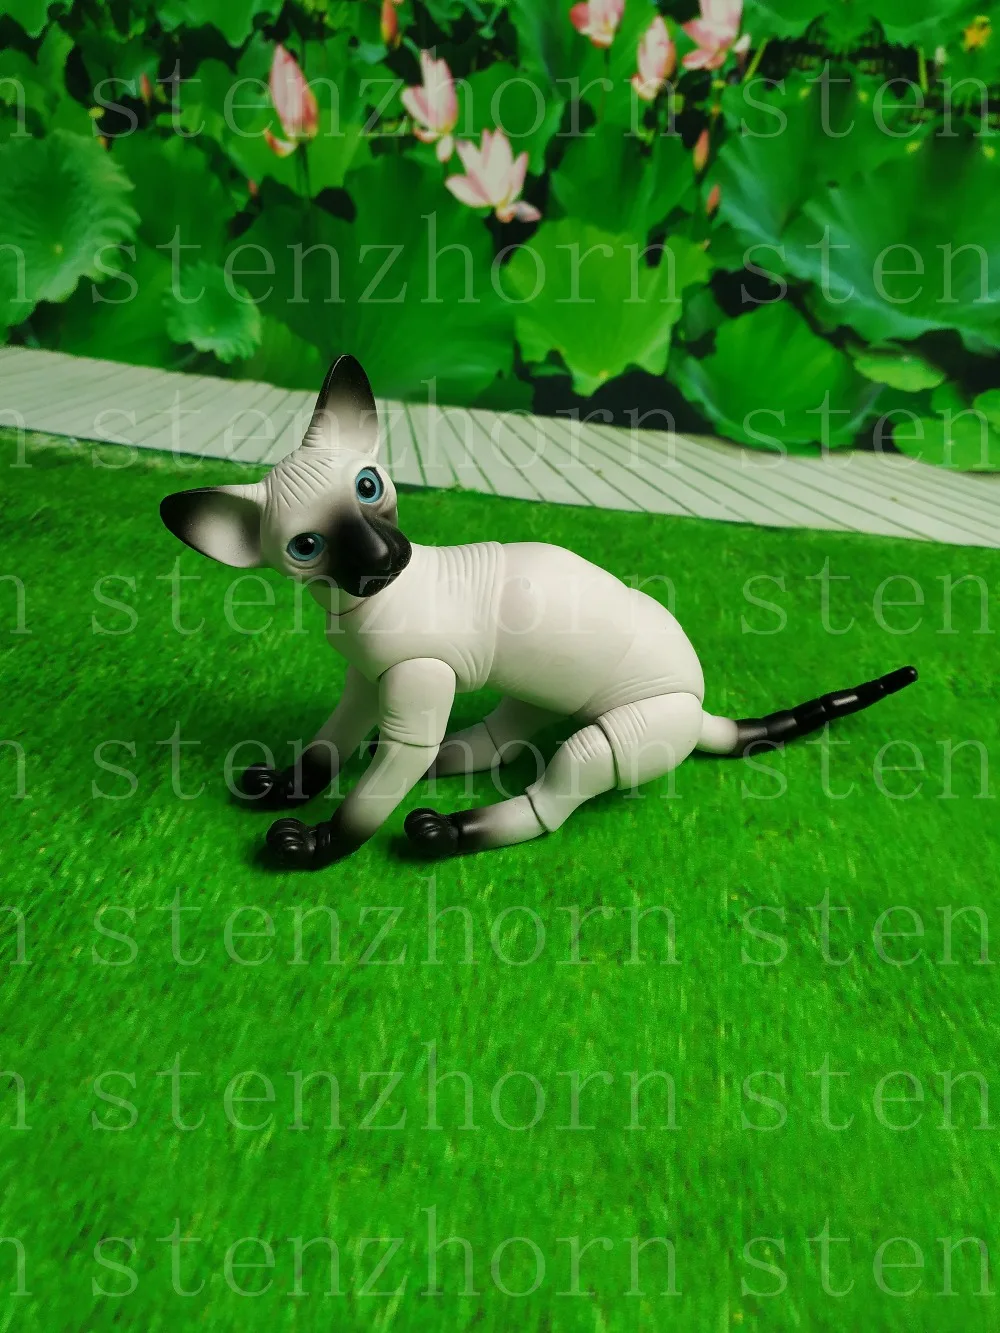 Stenzhorn новая bjd кукла-безволосый кот животное игрушка Модная Кукла бесплатные глаза